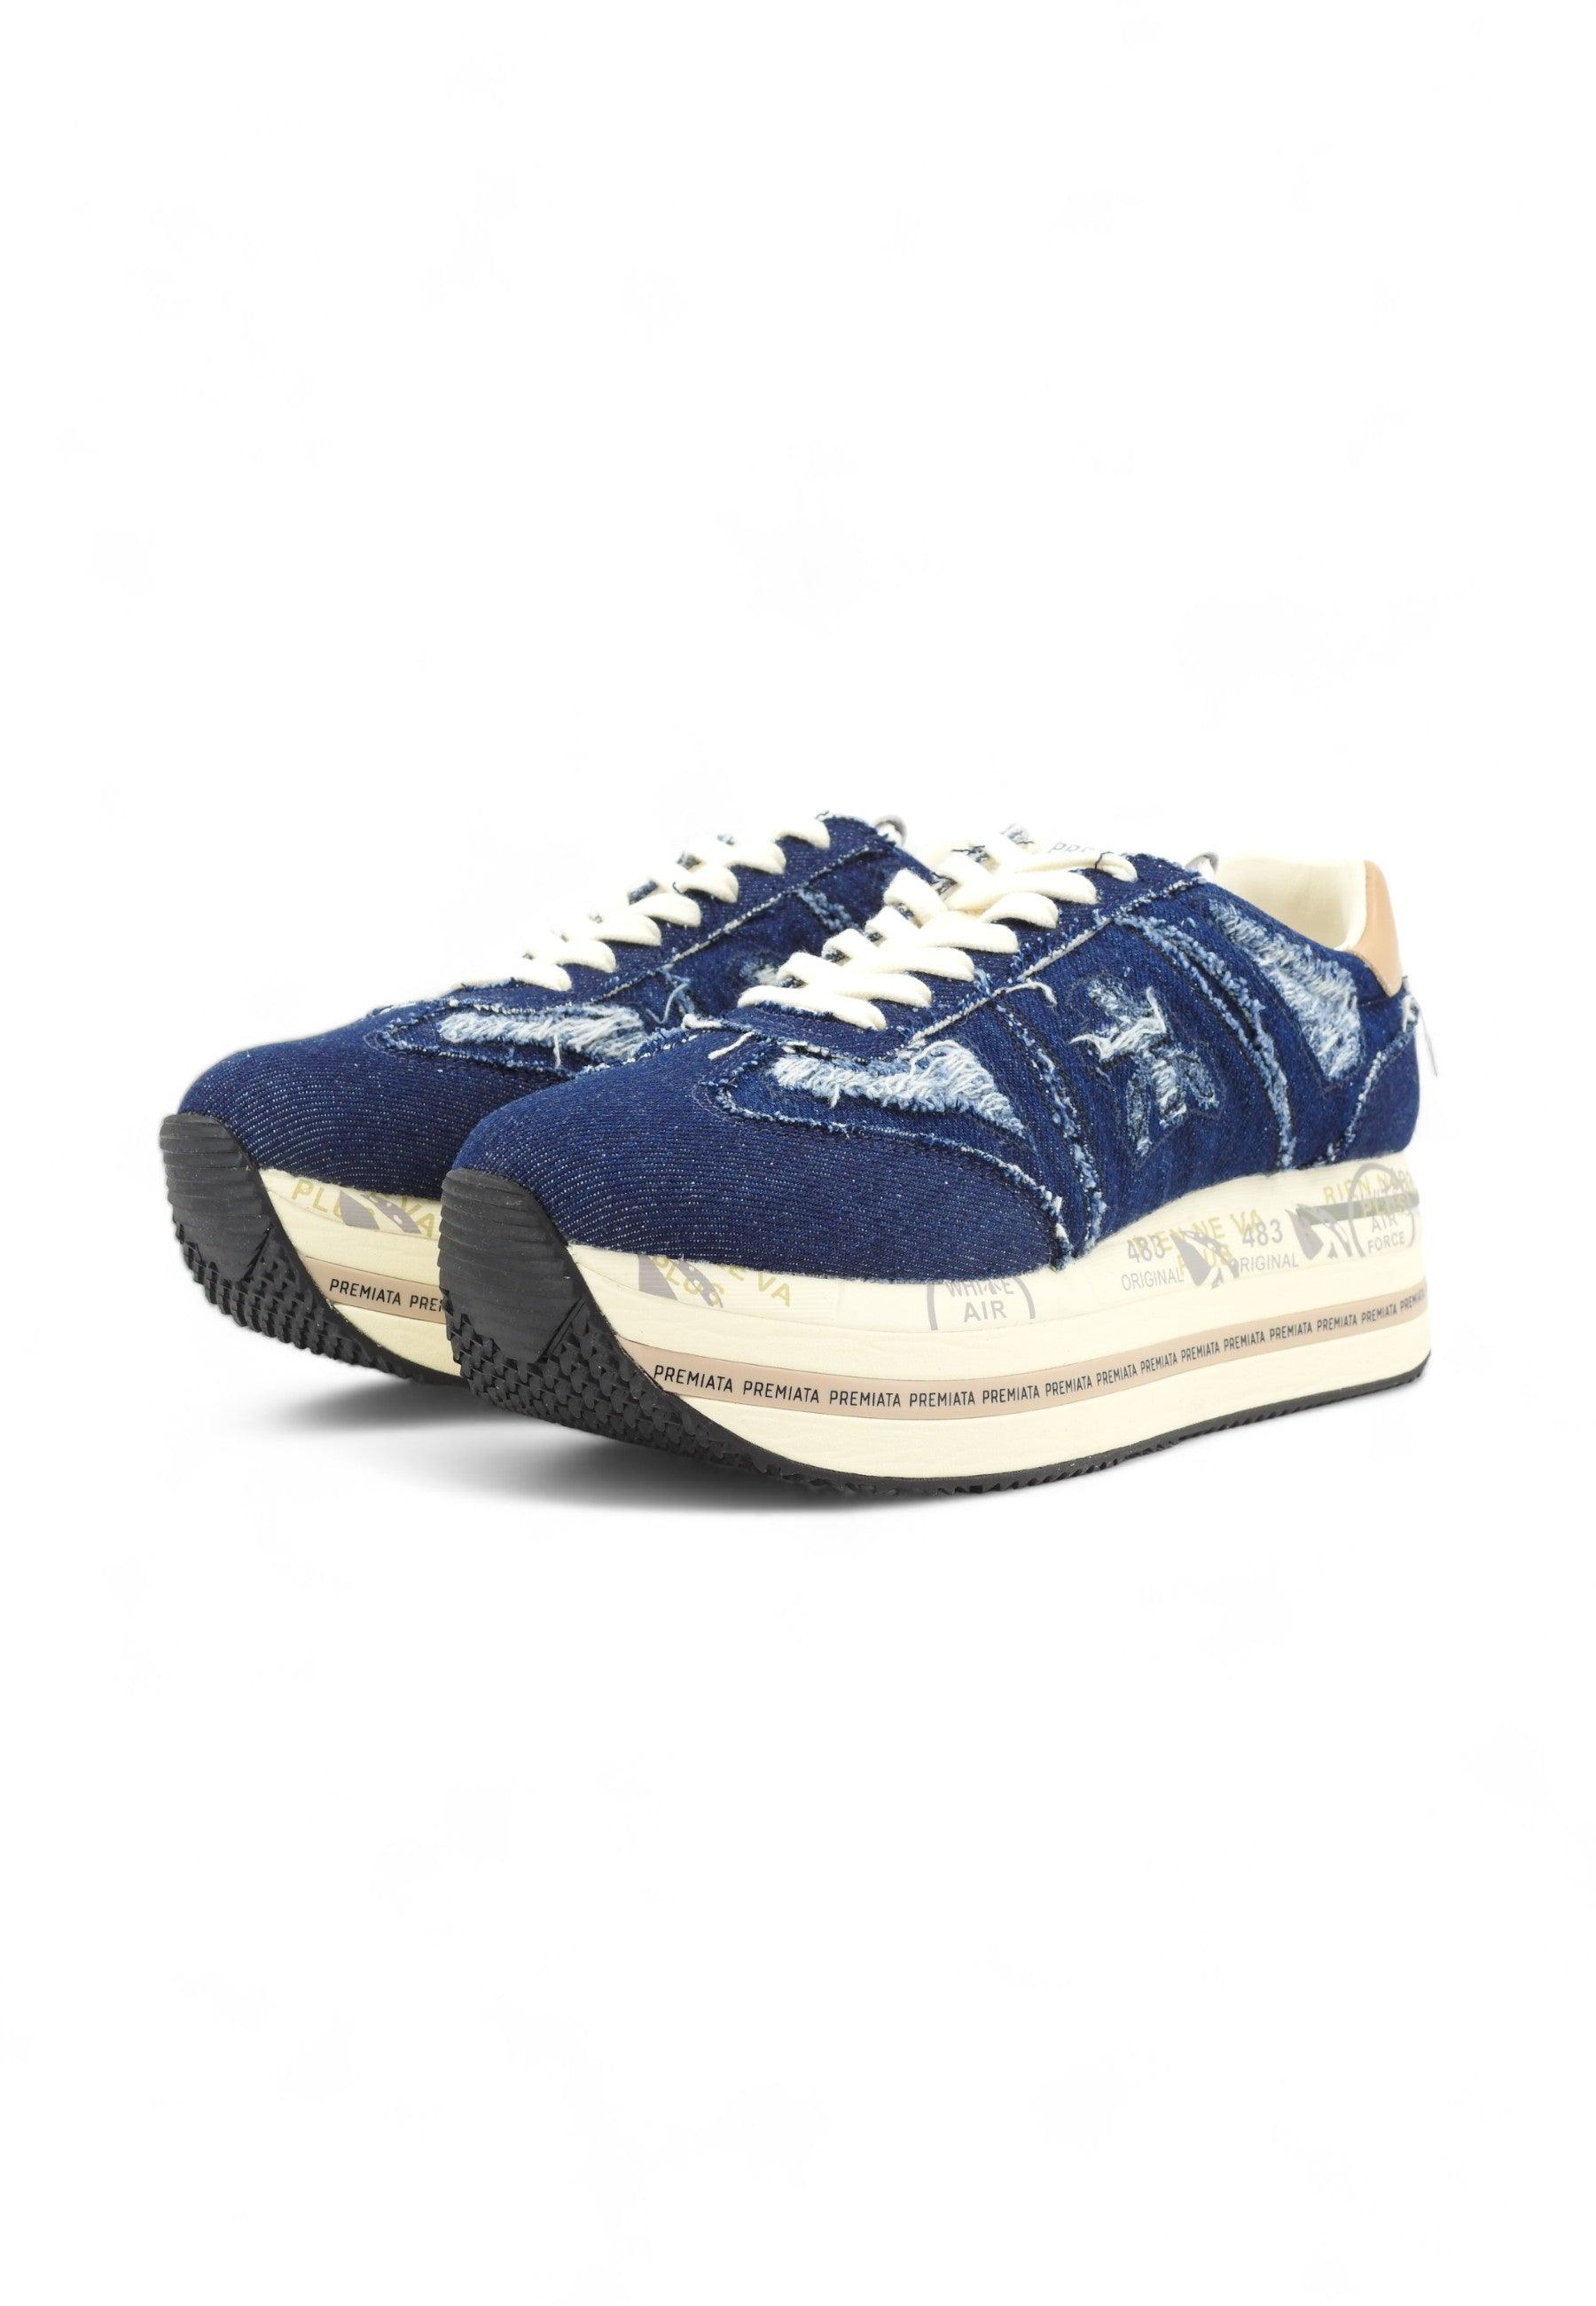 PREMIATA Sneaker Donna Denim Jeans Blu BETH-6714 - Sandrini Calzature e Abbigliamento